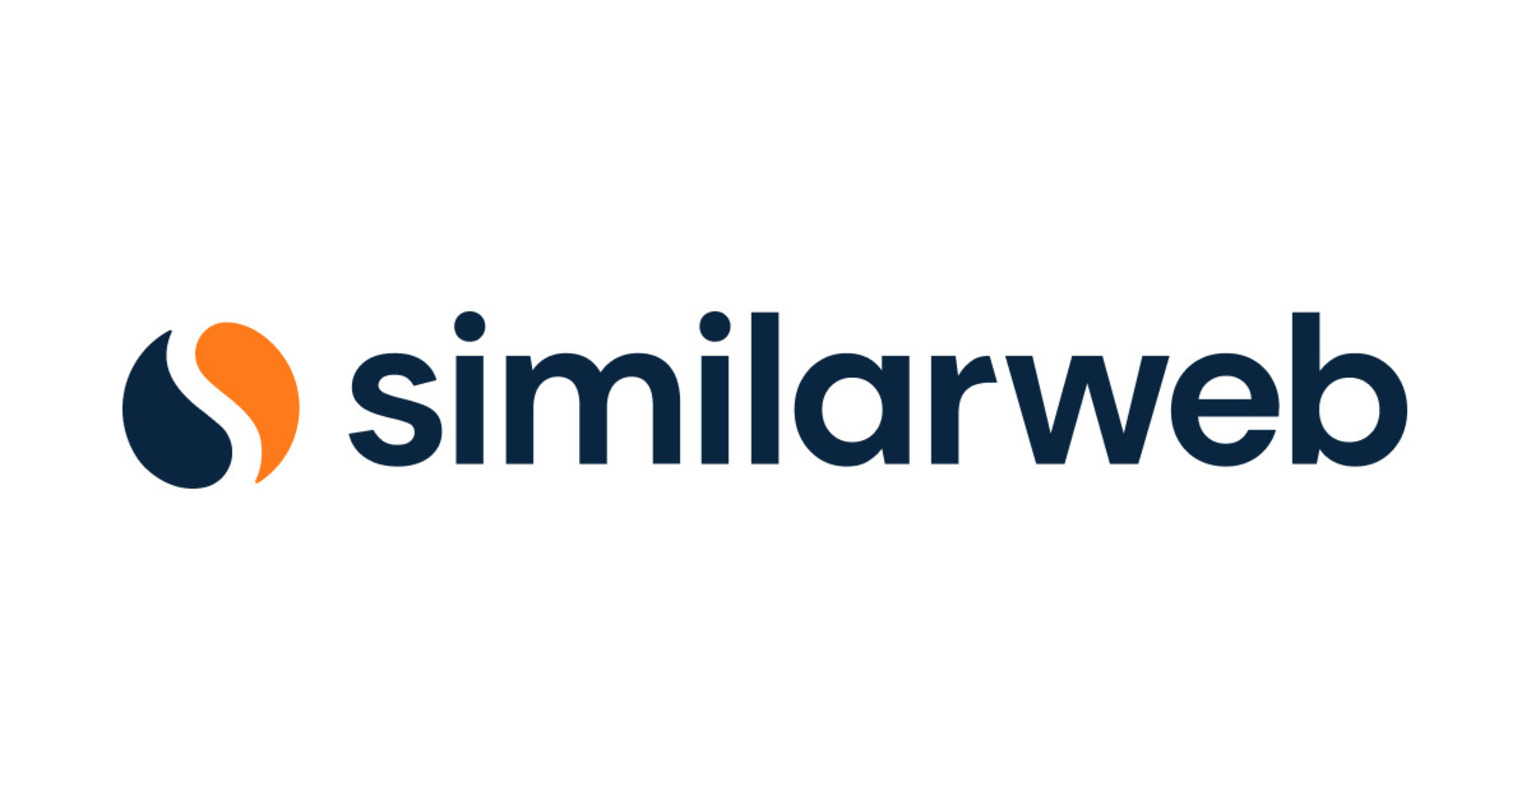 Nâng cấp lên phiên bản Pro của SimilarWeb, bạn sẽ có nhiều cơ hội thực hiện các tính năng đa dạng hơn